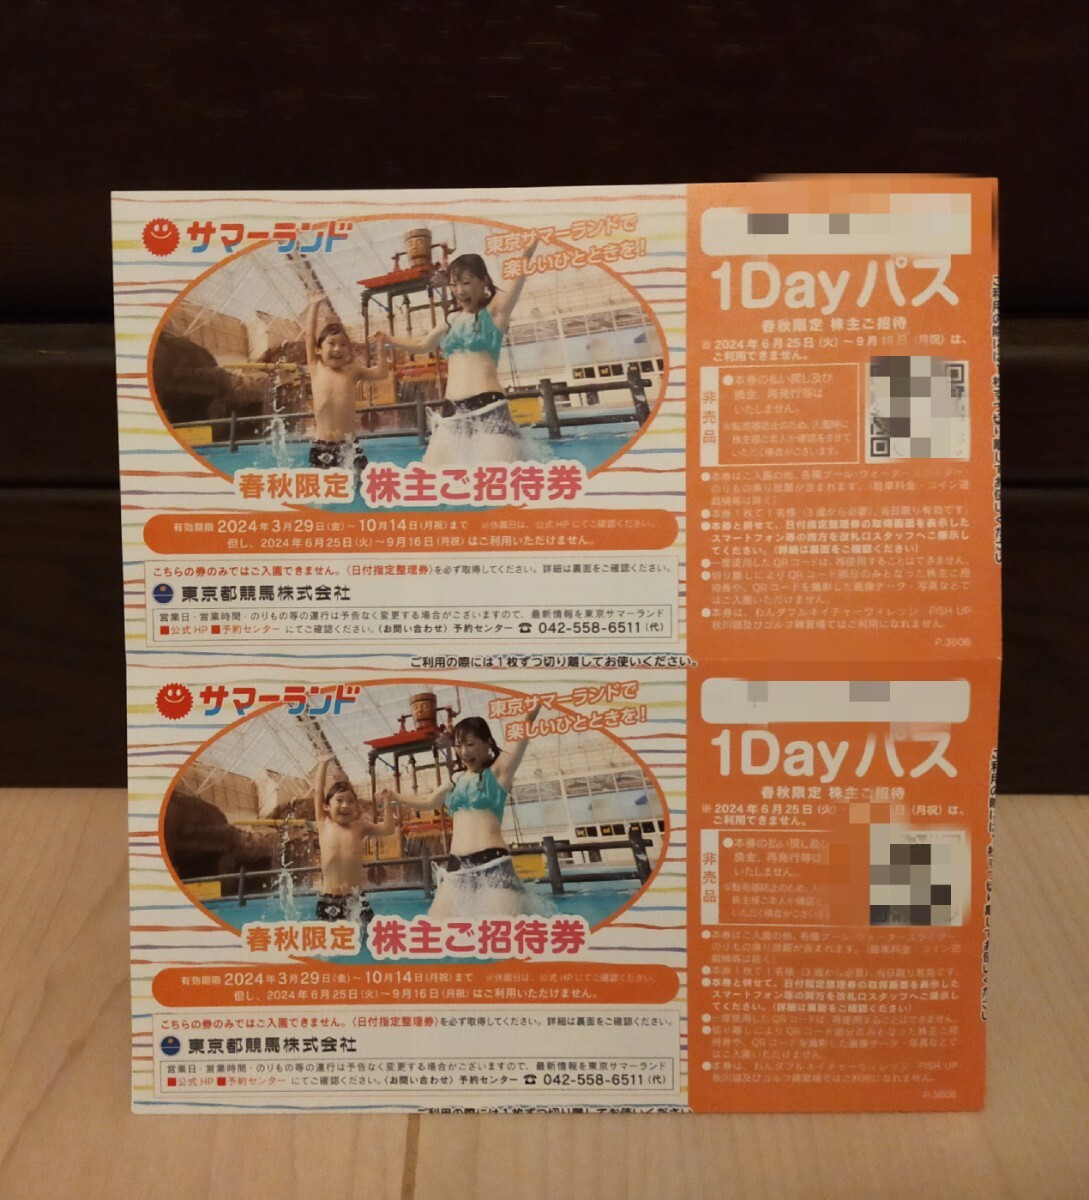  Tokyo summer Land stockholder invitation ticket free Pas invitation ticket 2 sheets set 